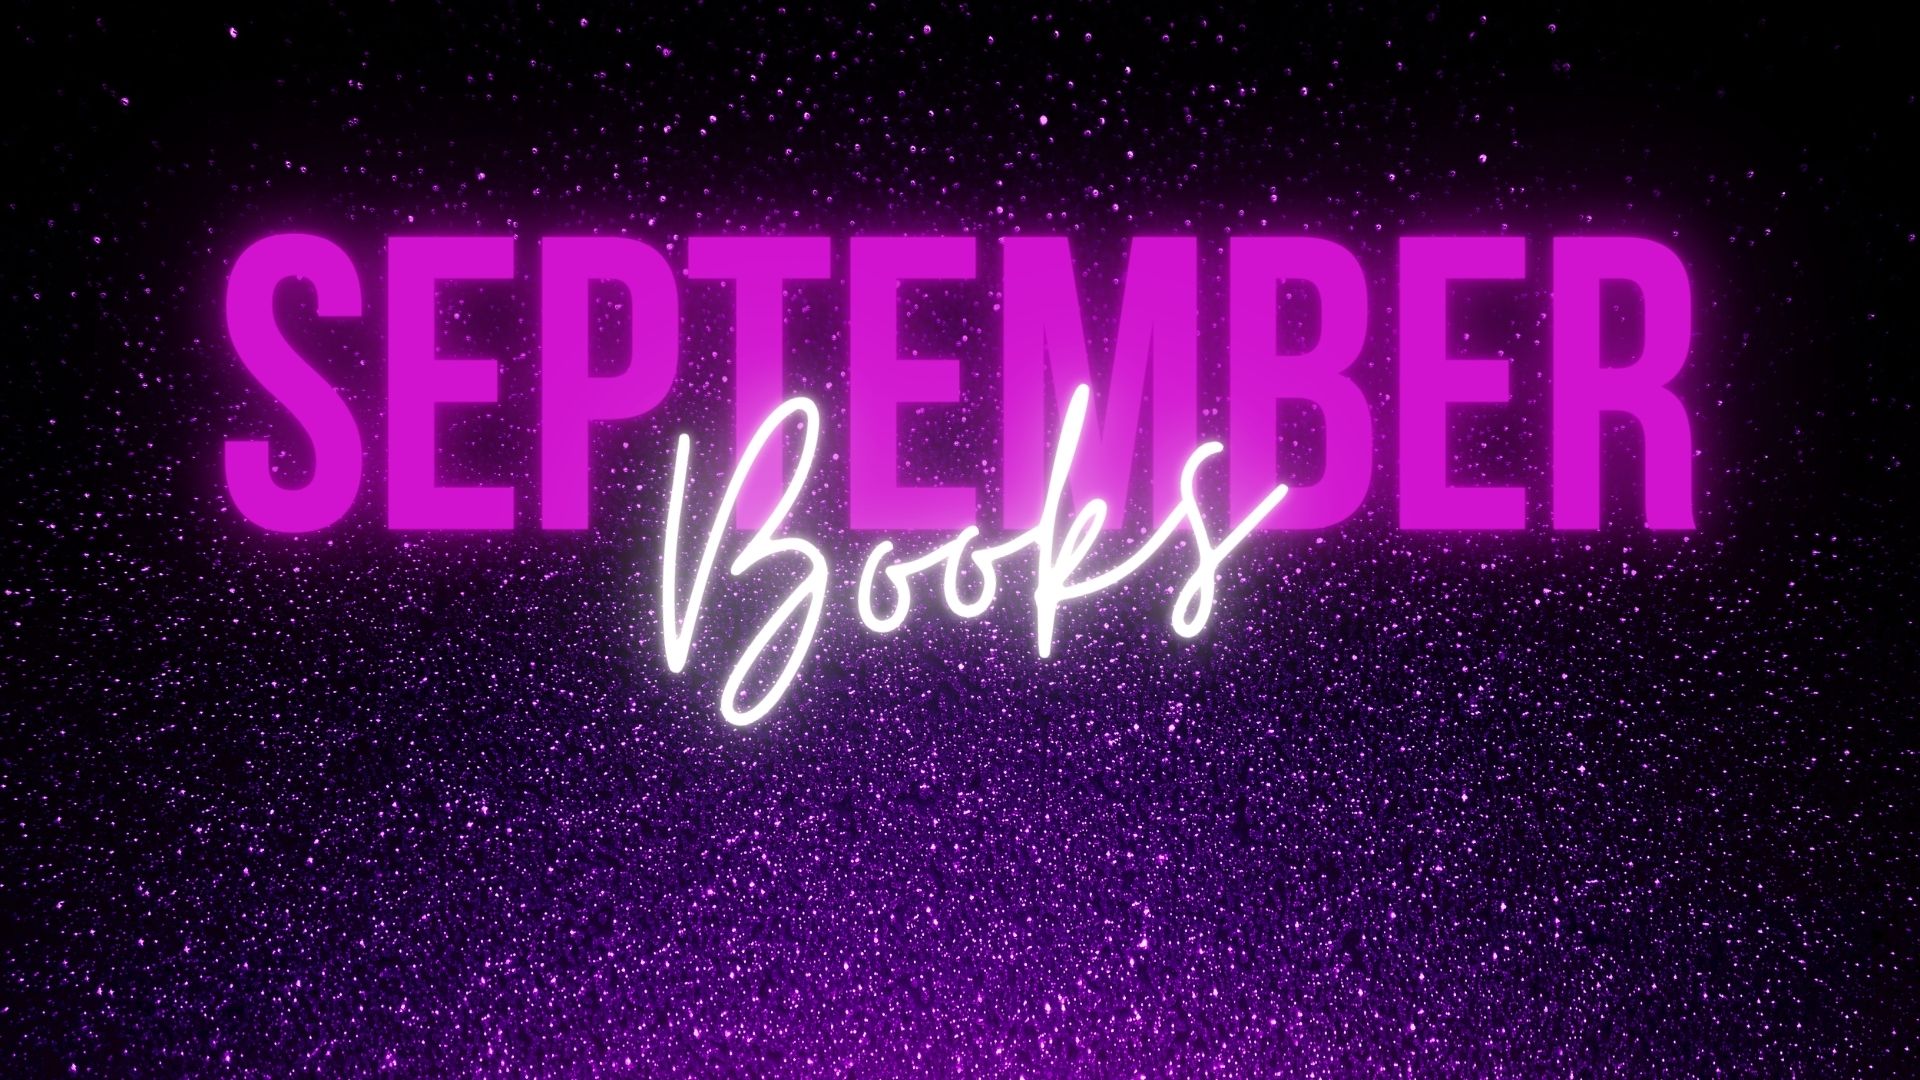 September Books of the Month!. Amy Nova's Books of the Month. September